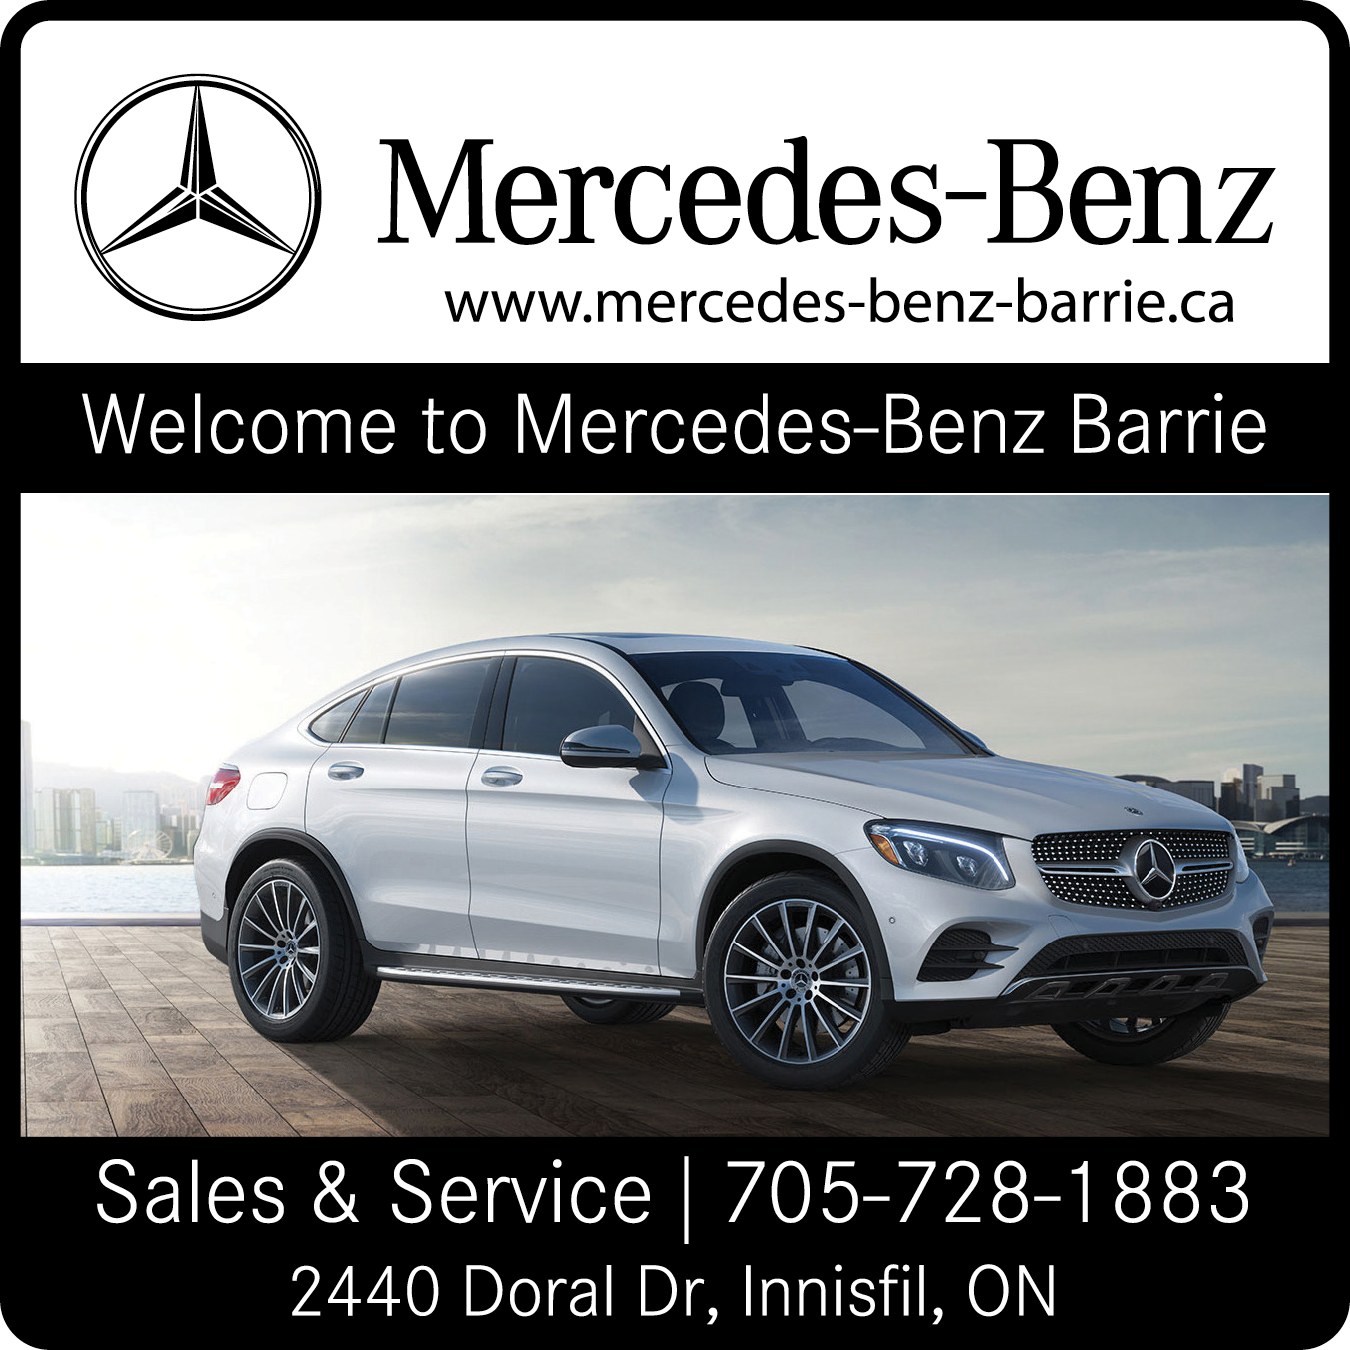 Mercedes Benz Barrie